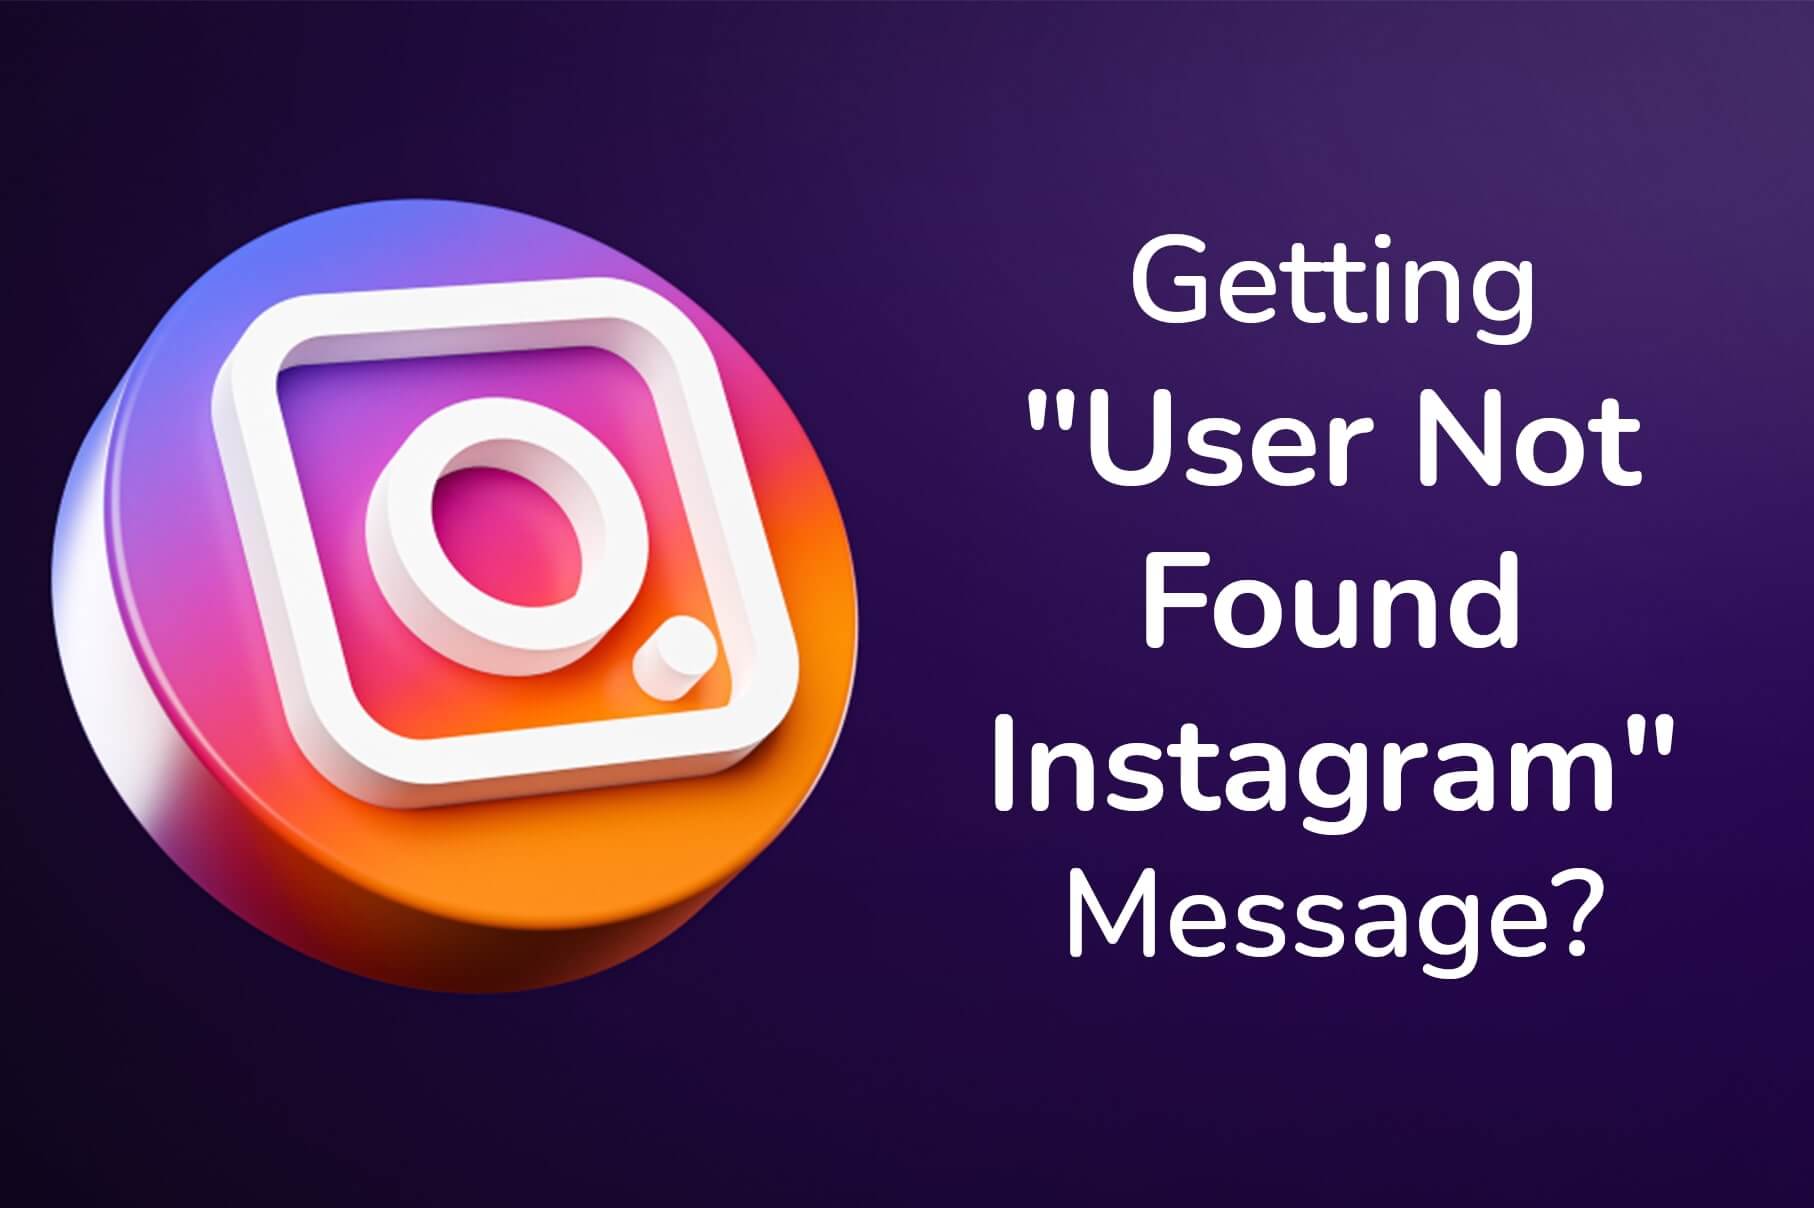 Getting User Not Found Instagram Message